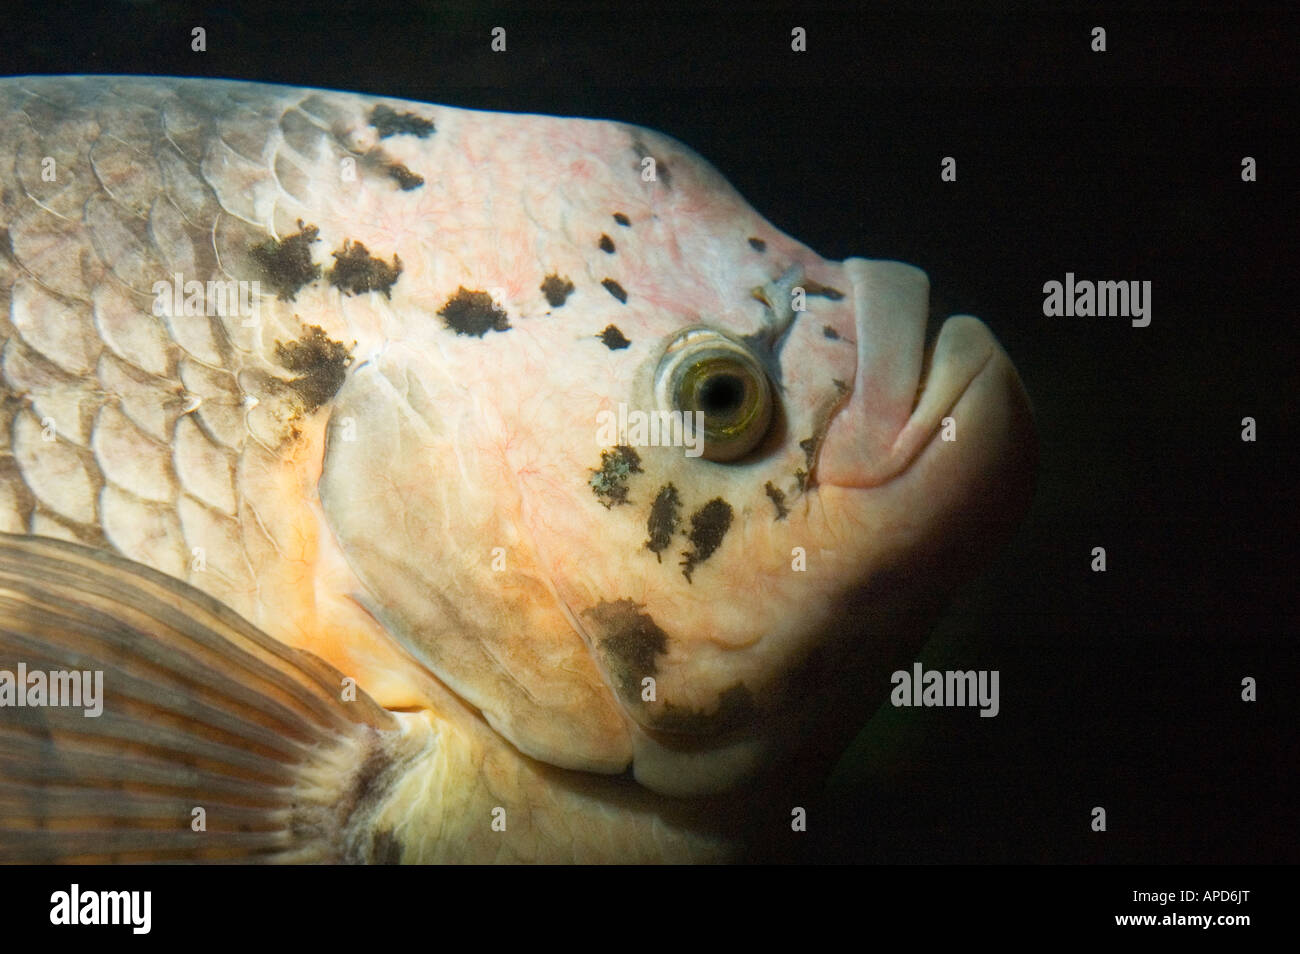 giant gourami  fish Osphronemus goramy Stock Photo